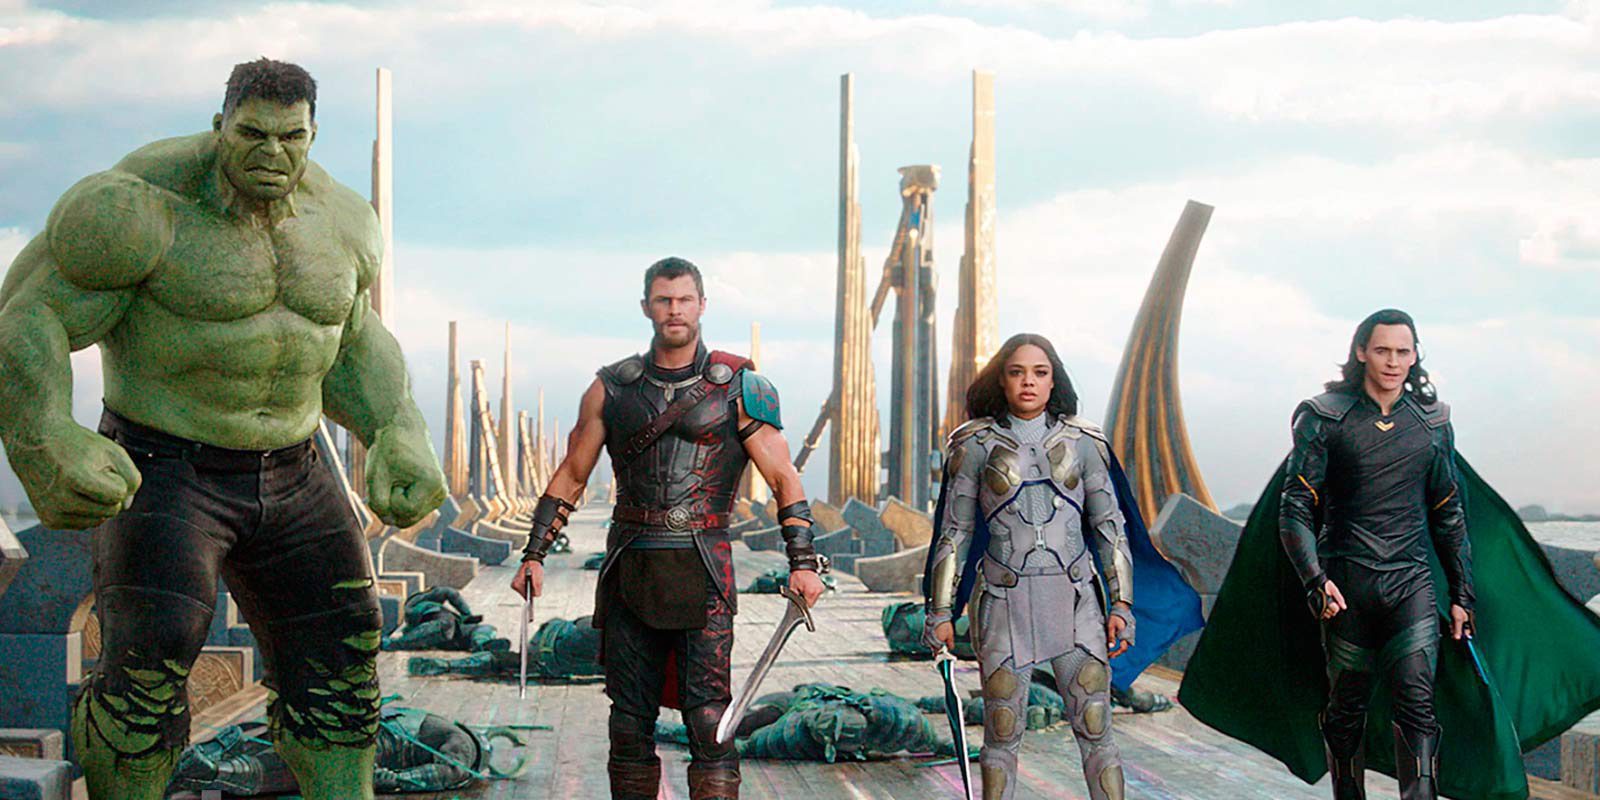 Las primeras críticas coinciden: 'Thor: Ragnarok' es de las películas más divertidas de Marvel